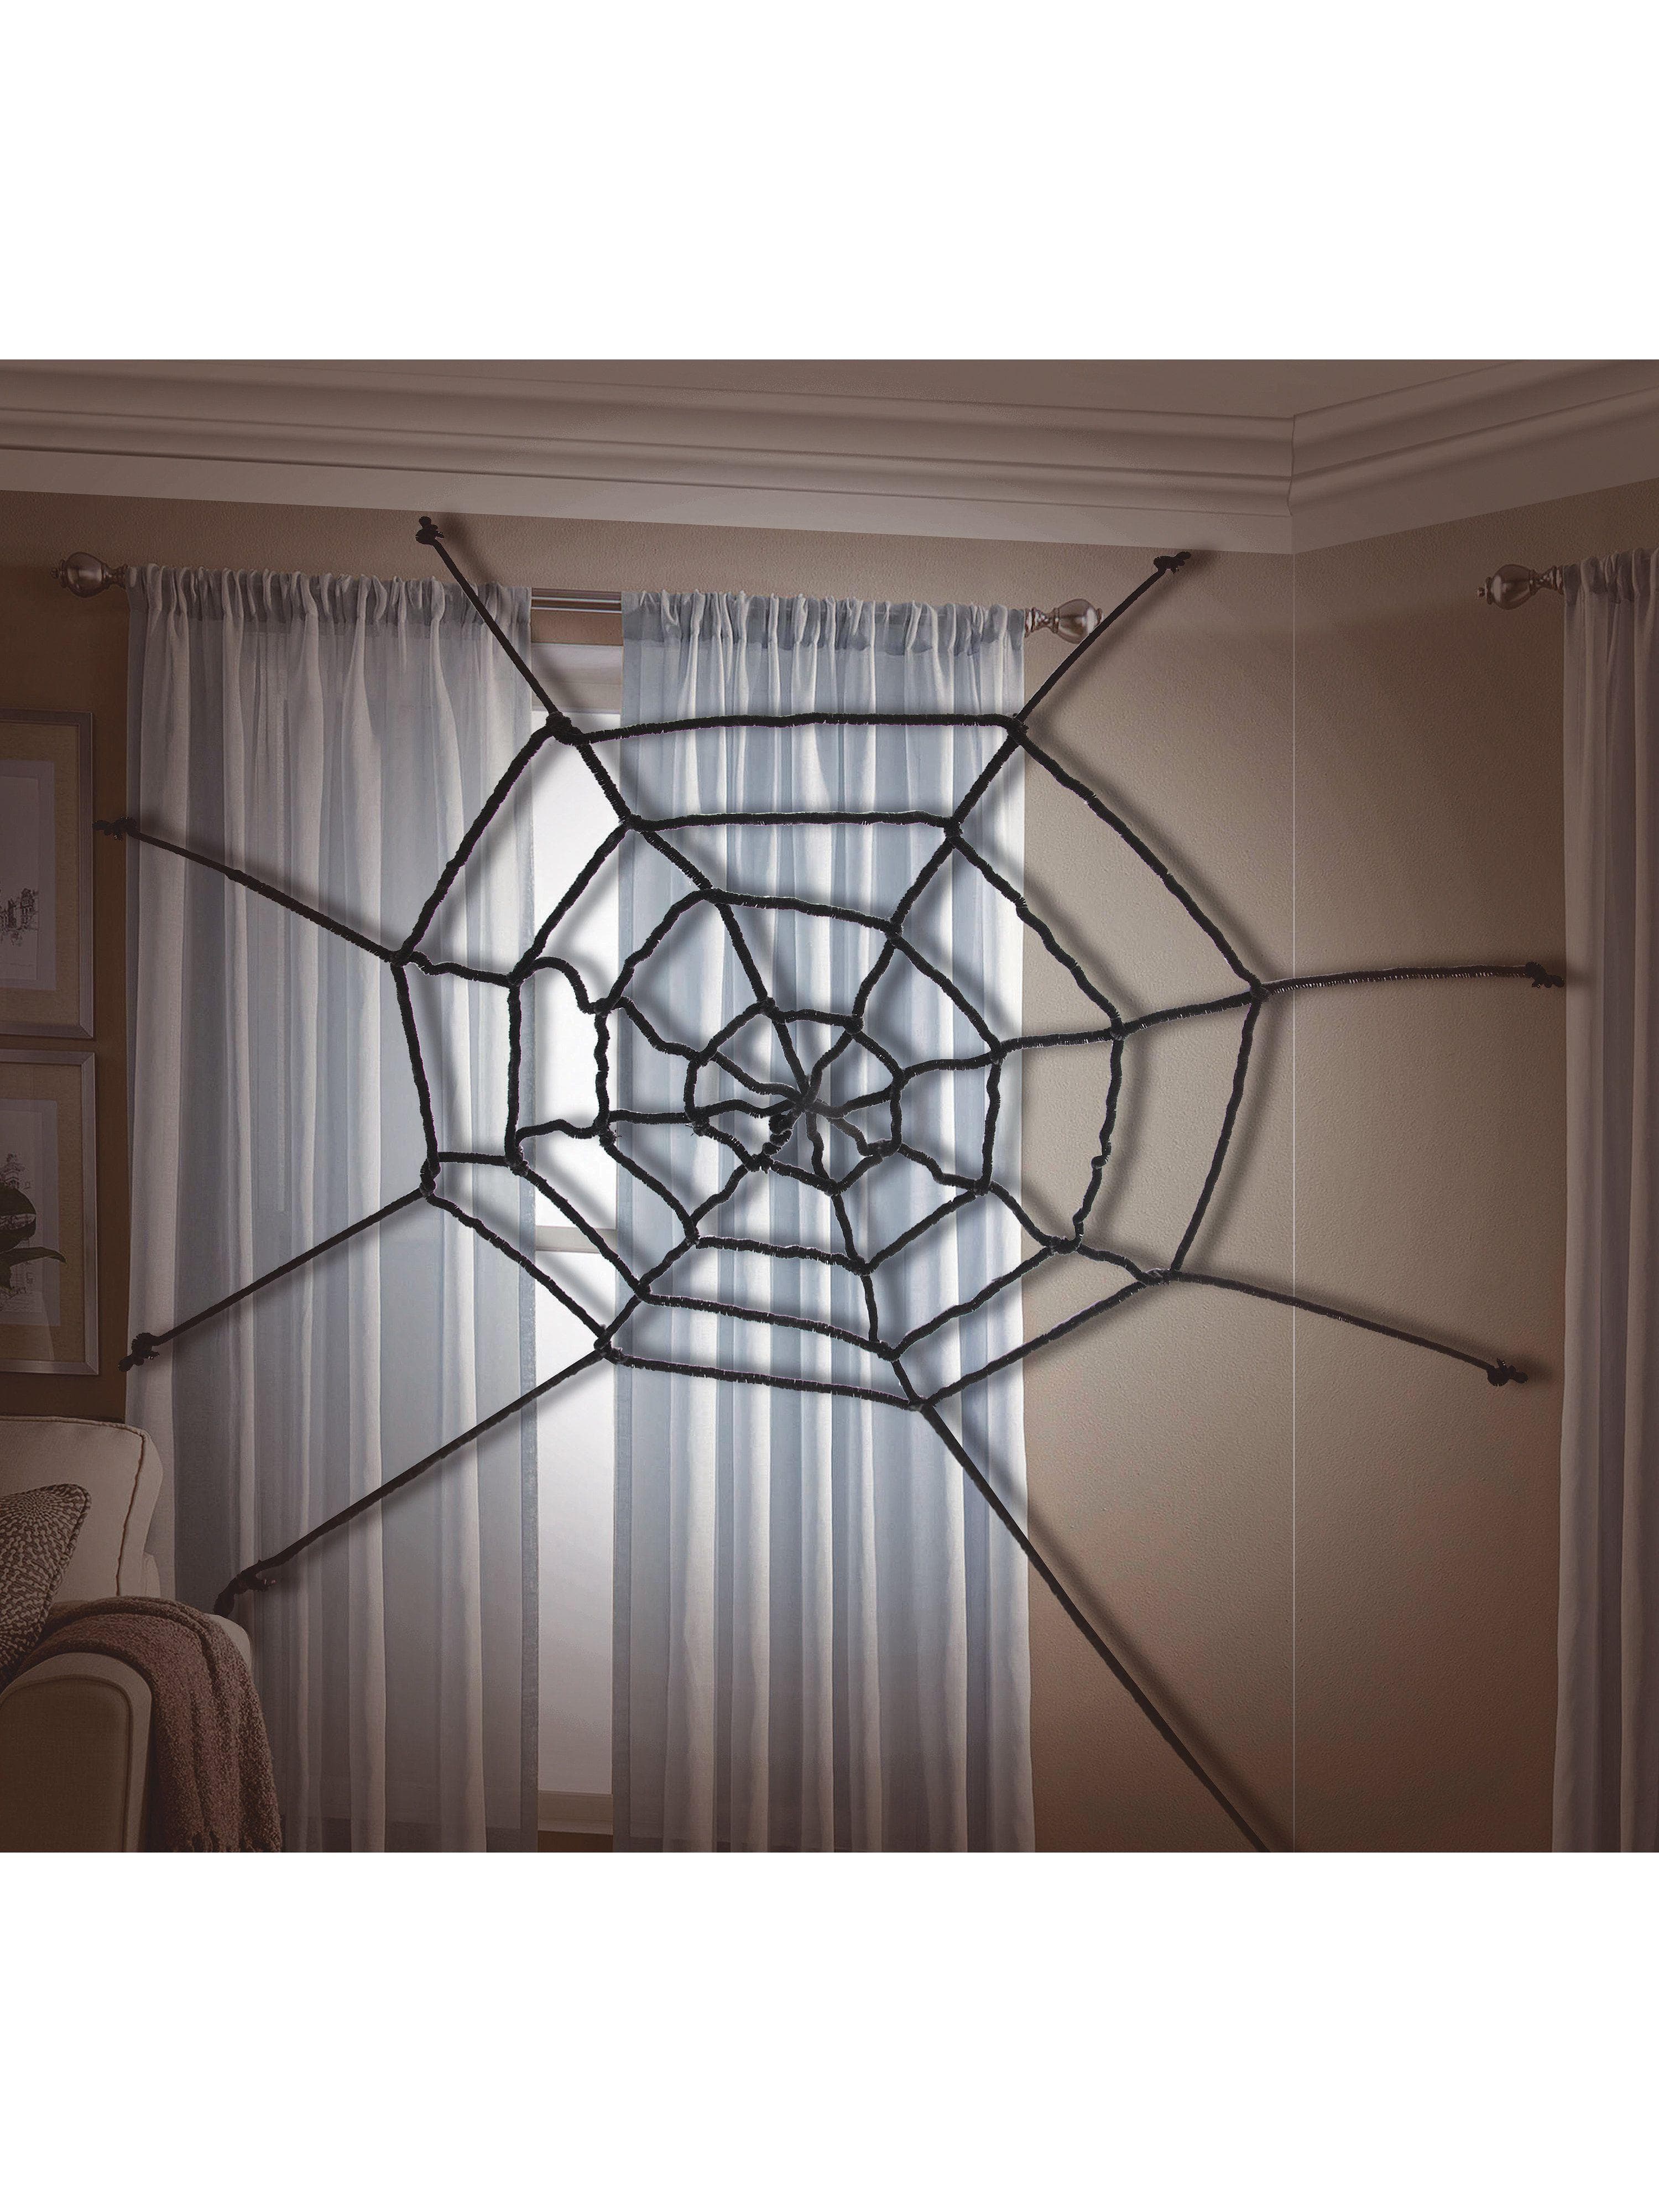 Spider Web Rope - costumes.com